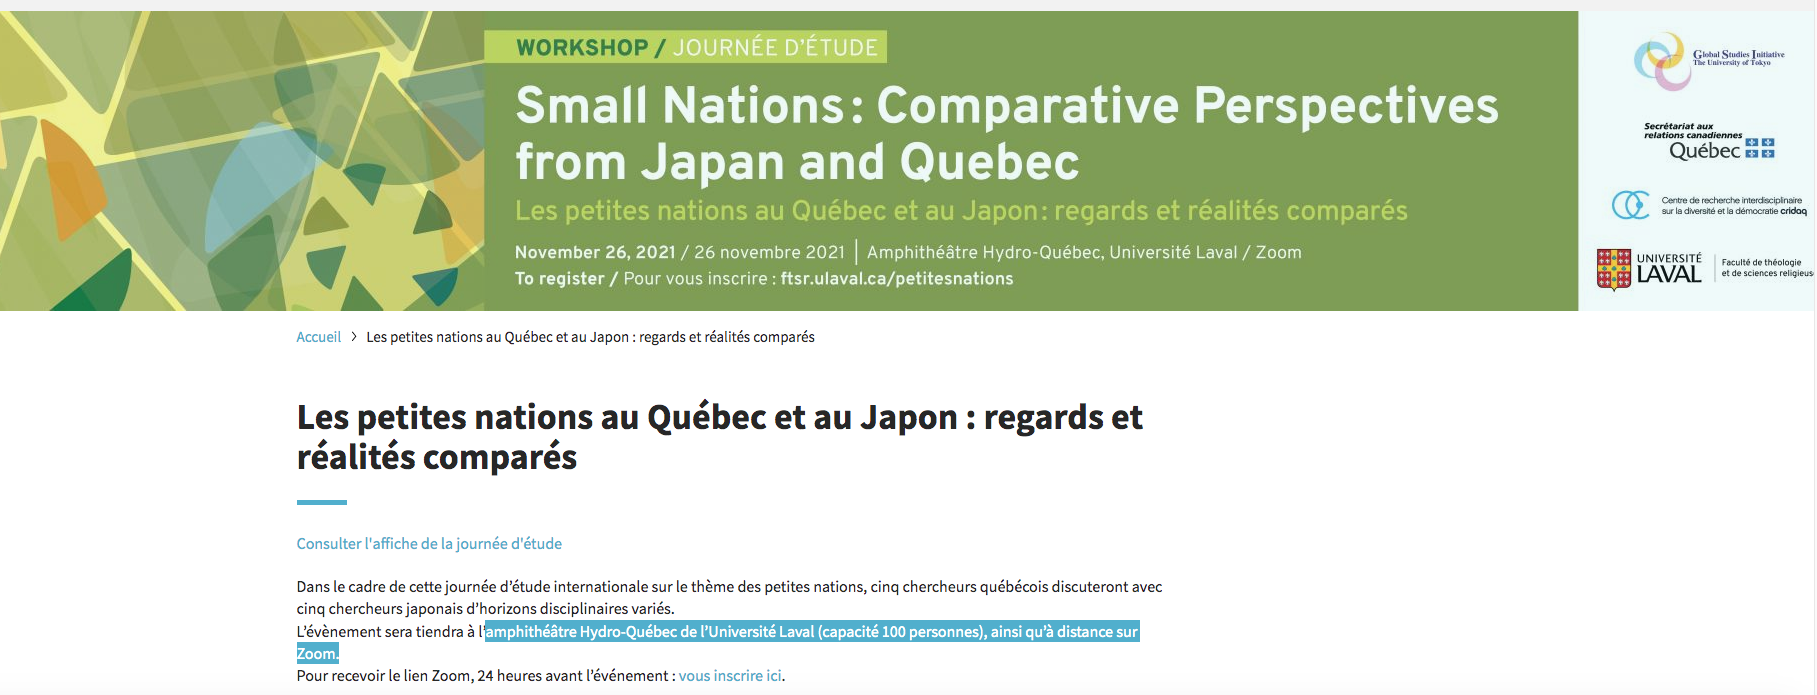 Les petites nations au Québec et au Japon : regards et réalités comparés